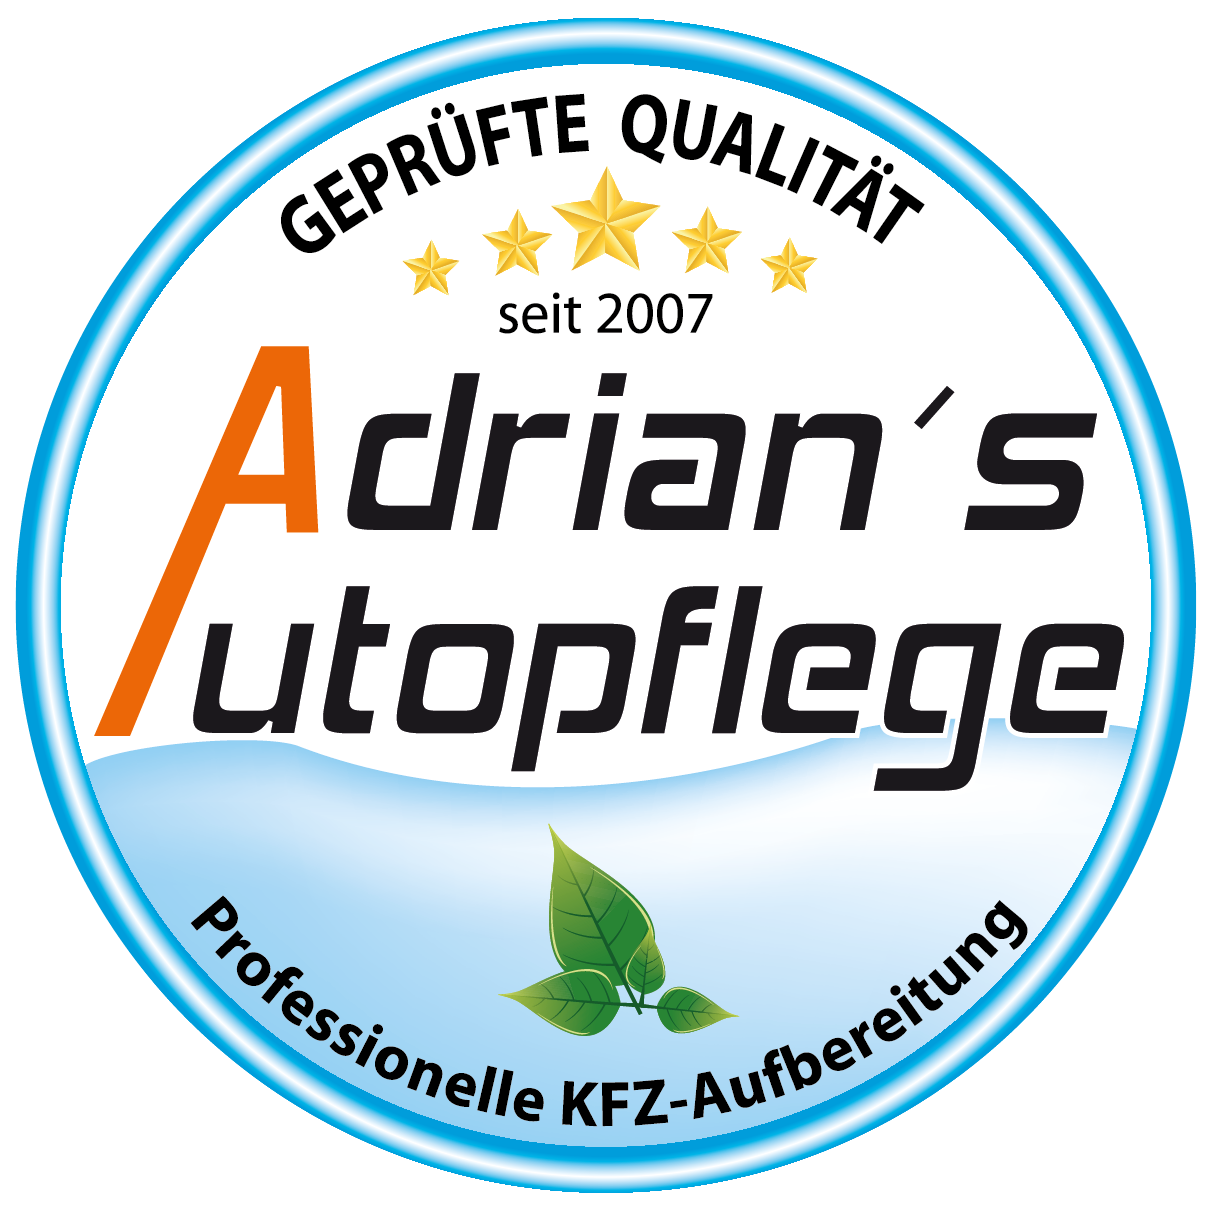 Adrian`s Autopflege></span></h5>
<p></a></p>
<p <=